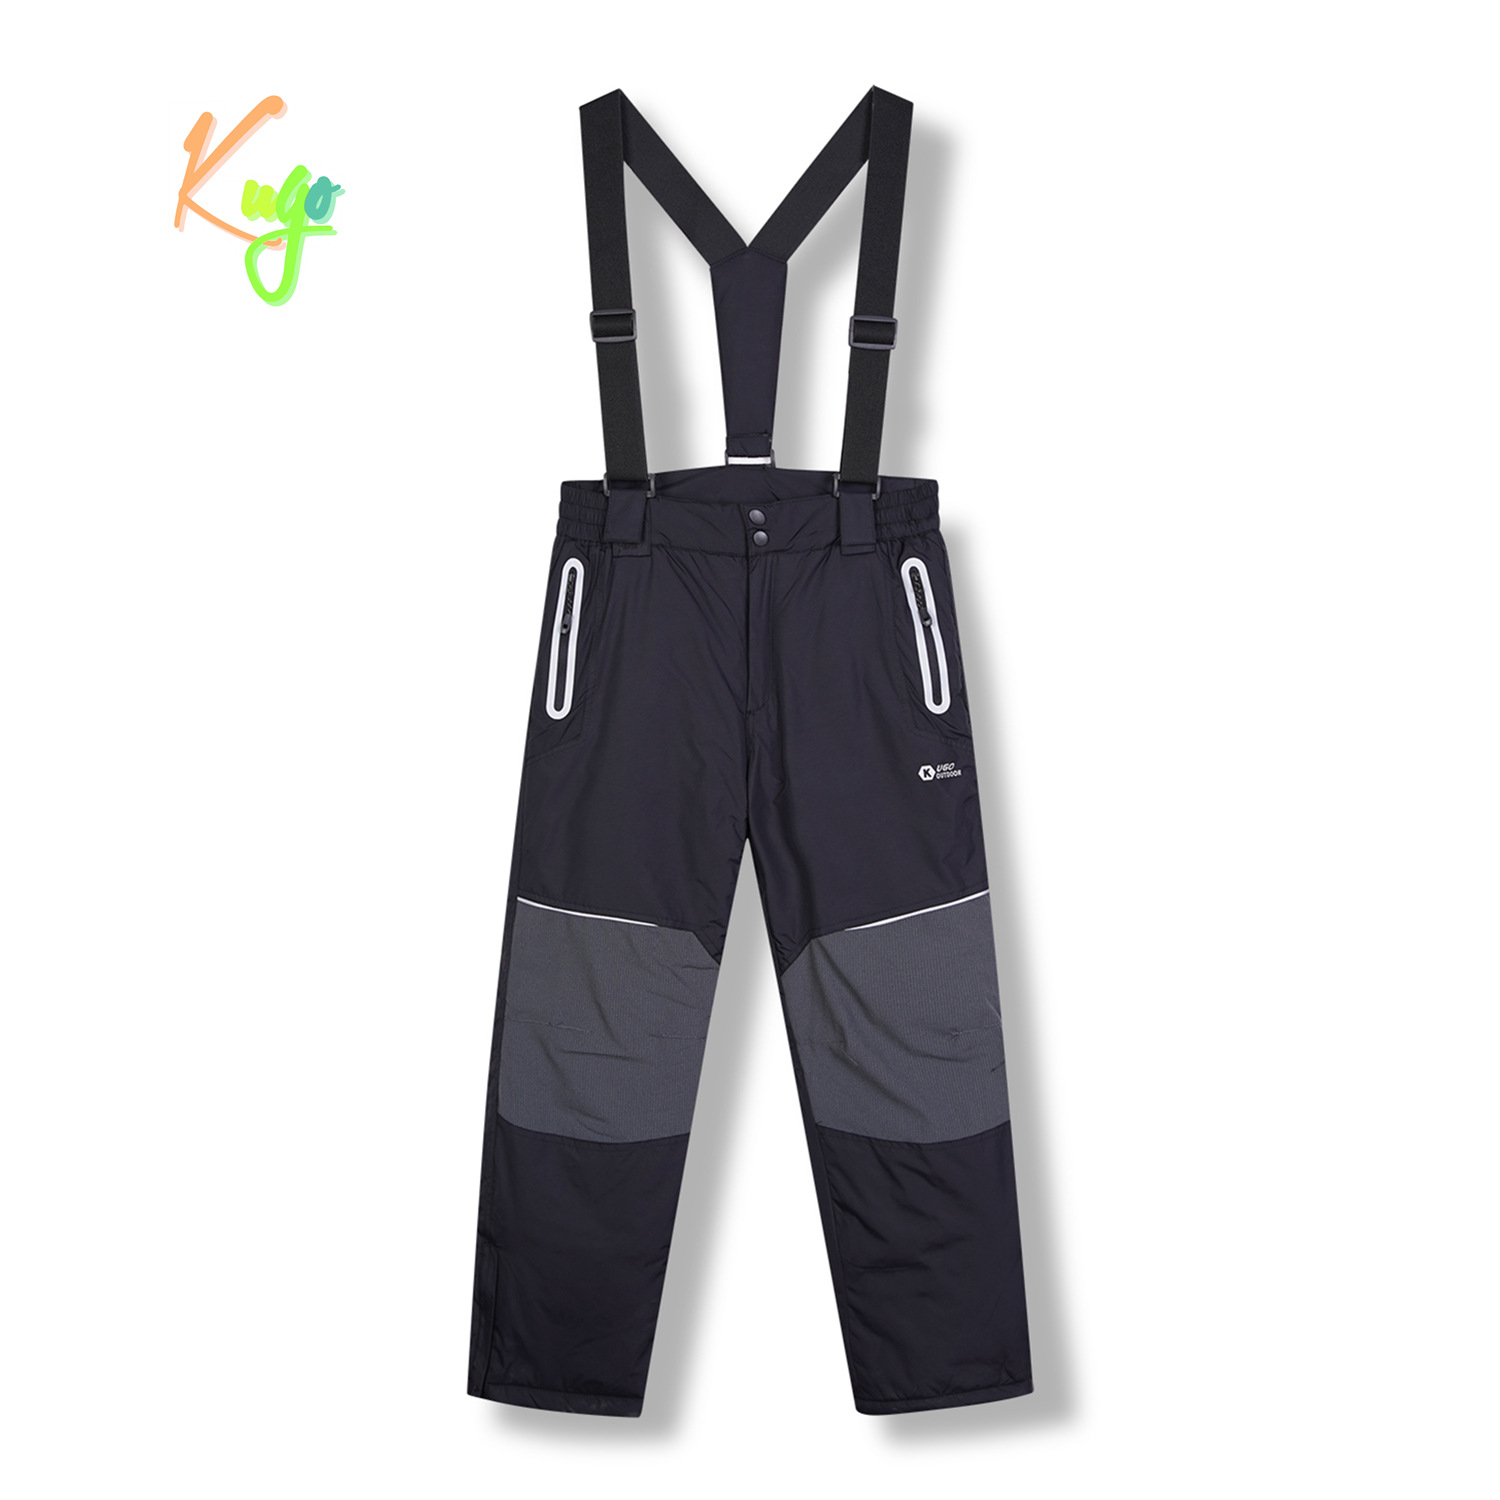 Chlapecké lyžařské kalhoty - KUGO DK8231, černá / černé zipy Barva: Černá, Velikost: 152